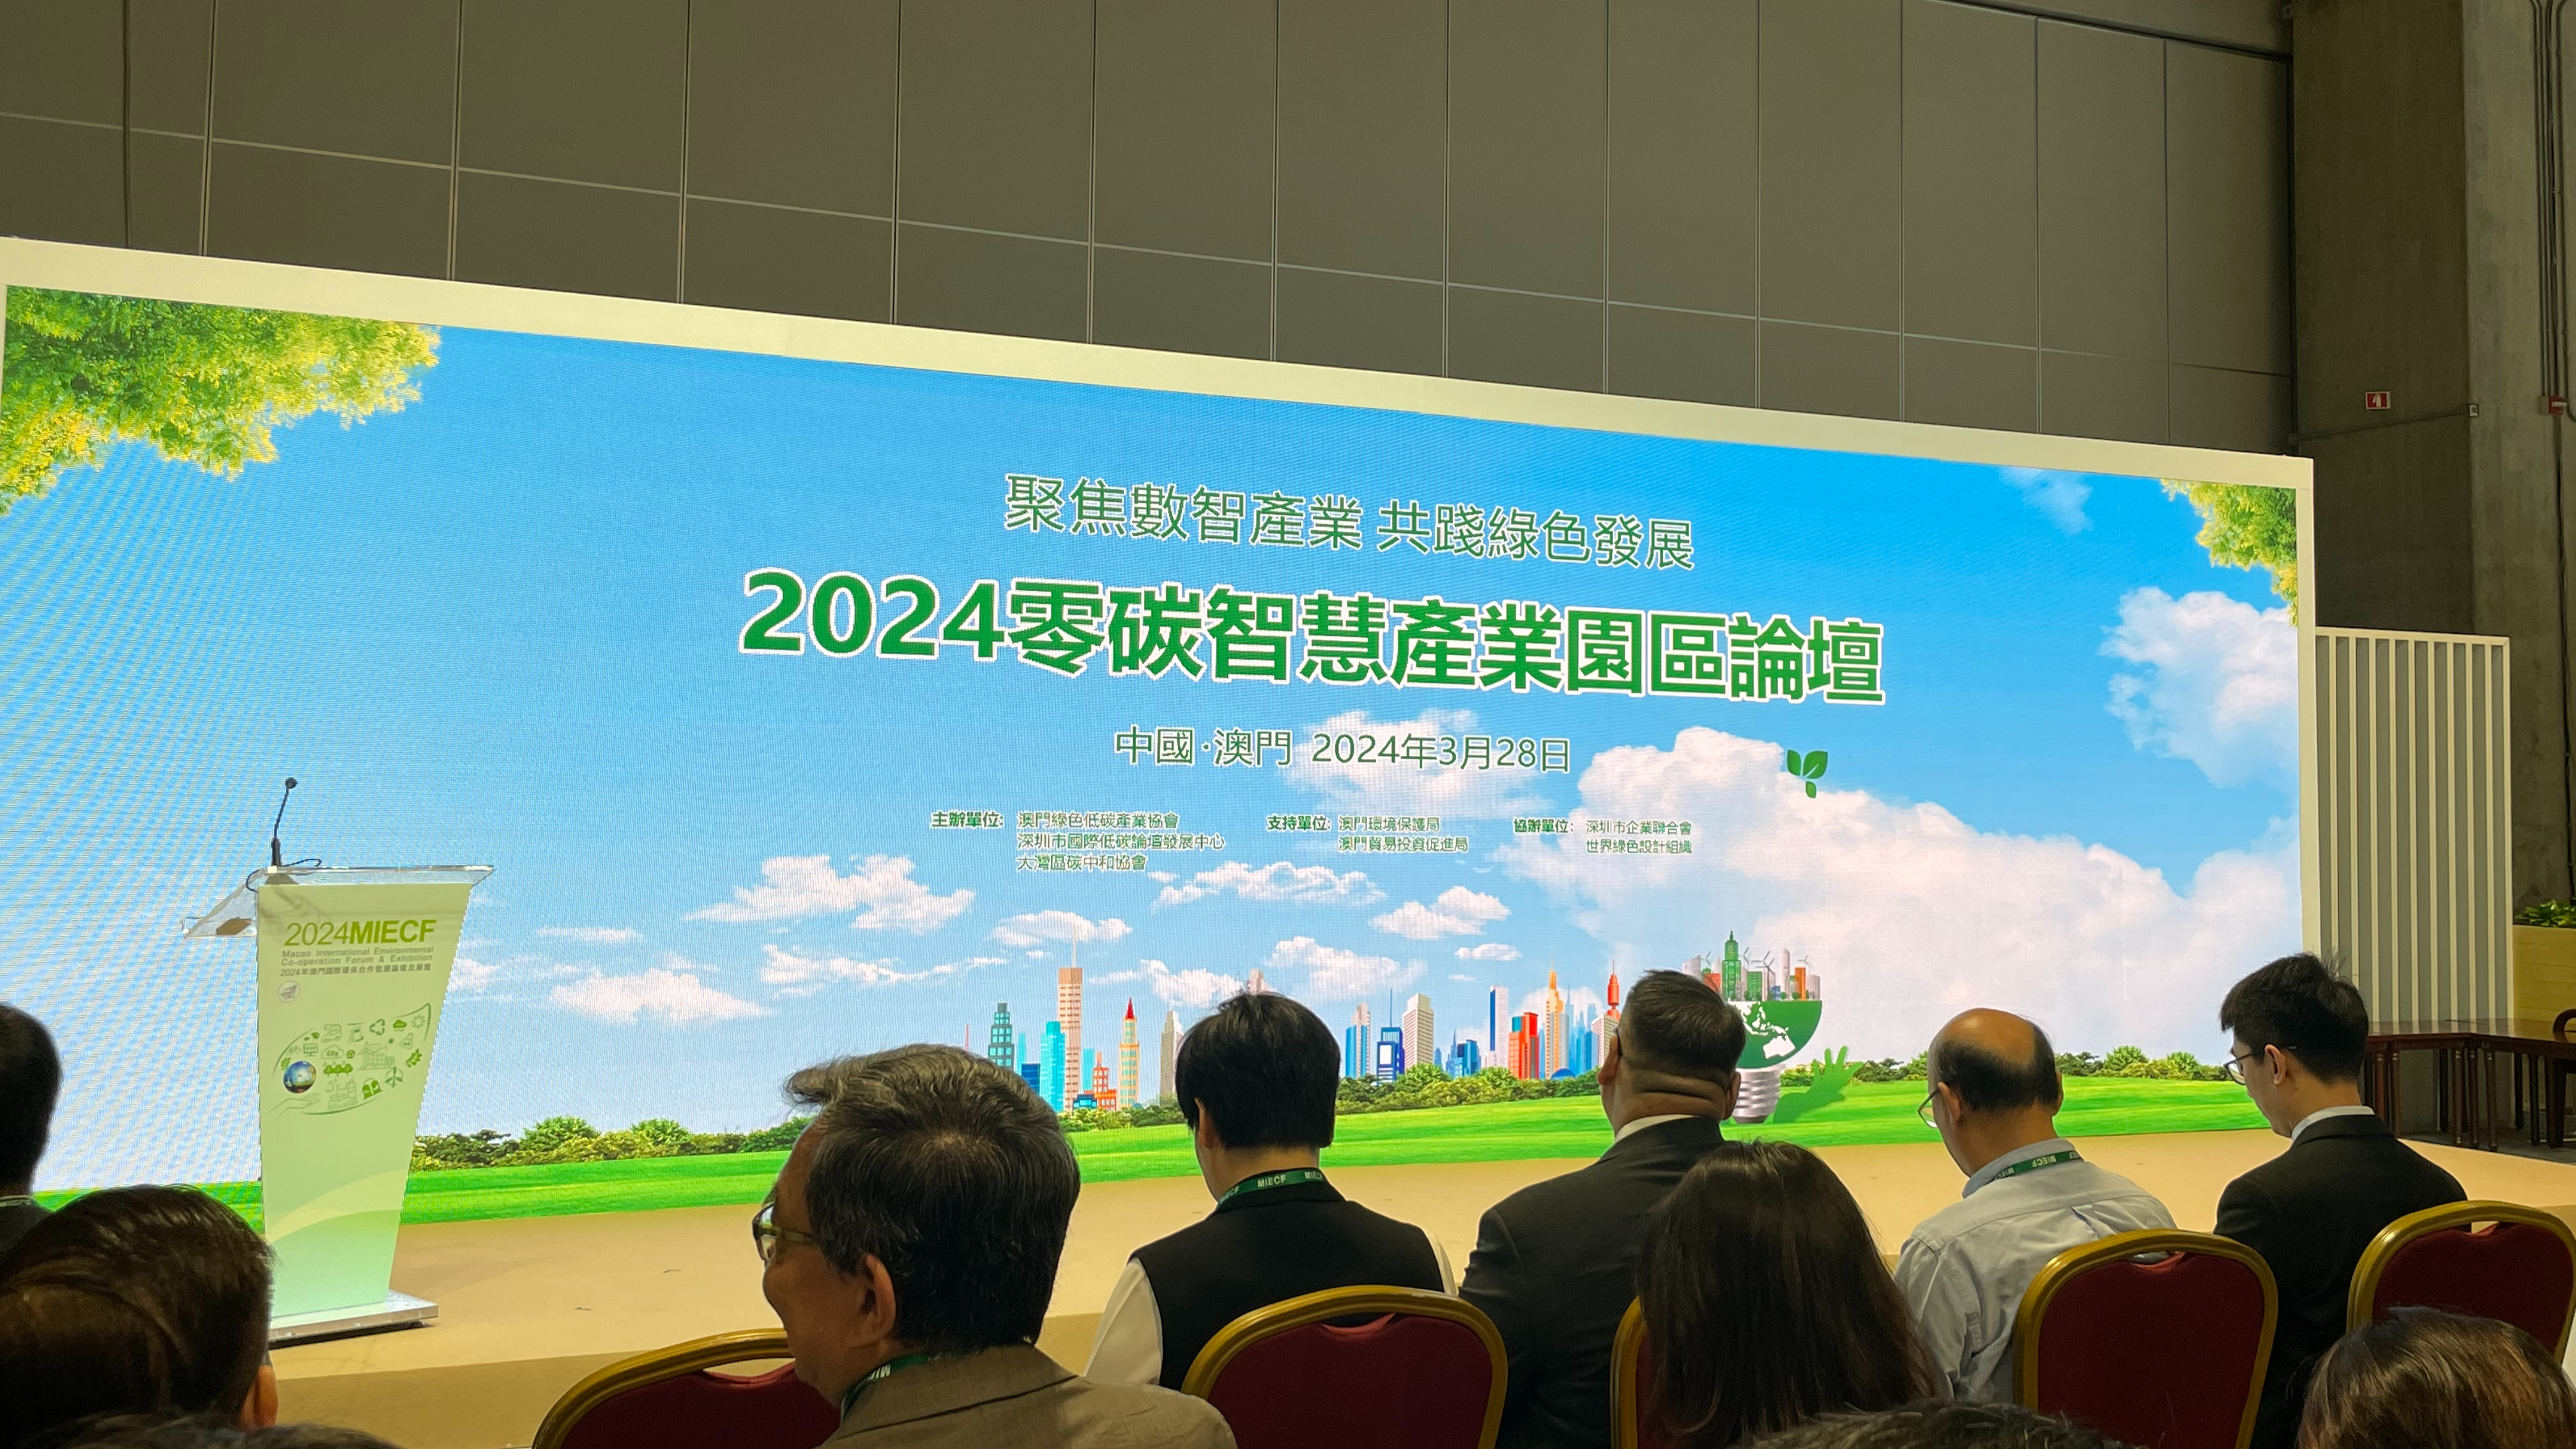 2024零碳智慧产业园区论坛现场。刘洋/摄